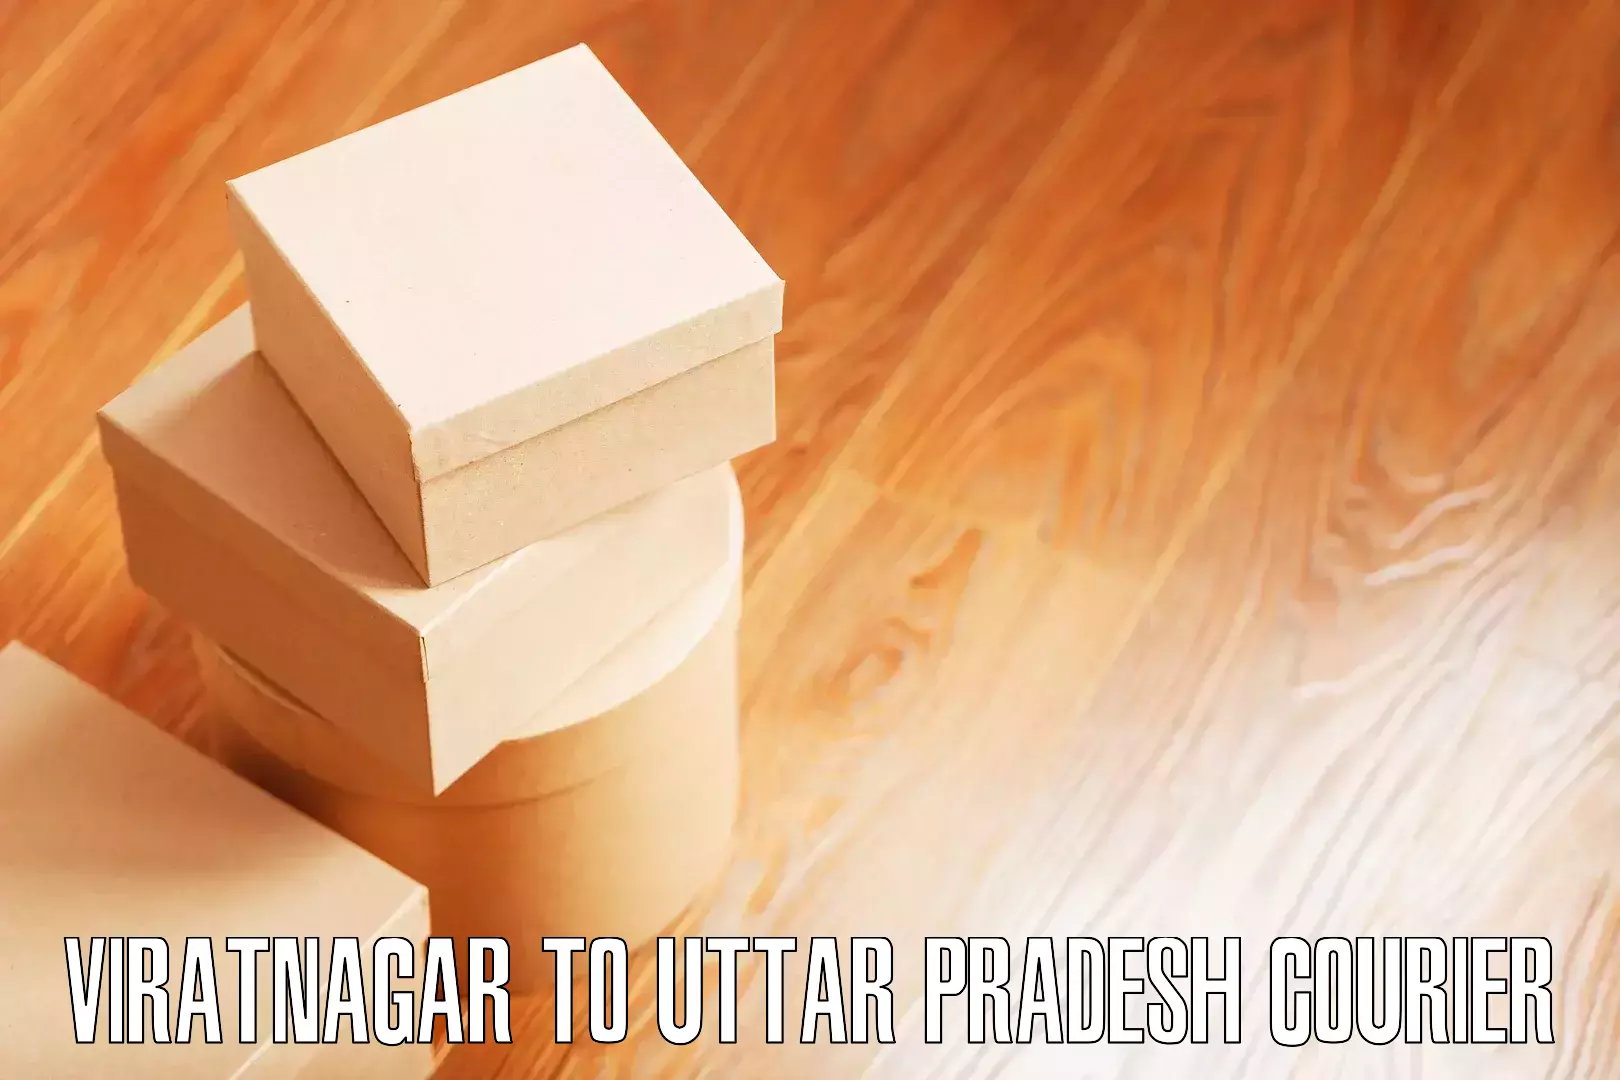 Stress-free moving Viratnagar to Chopan